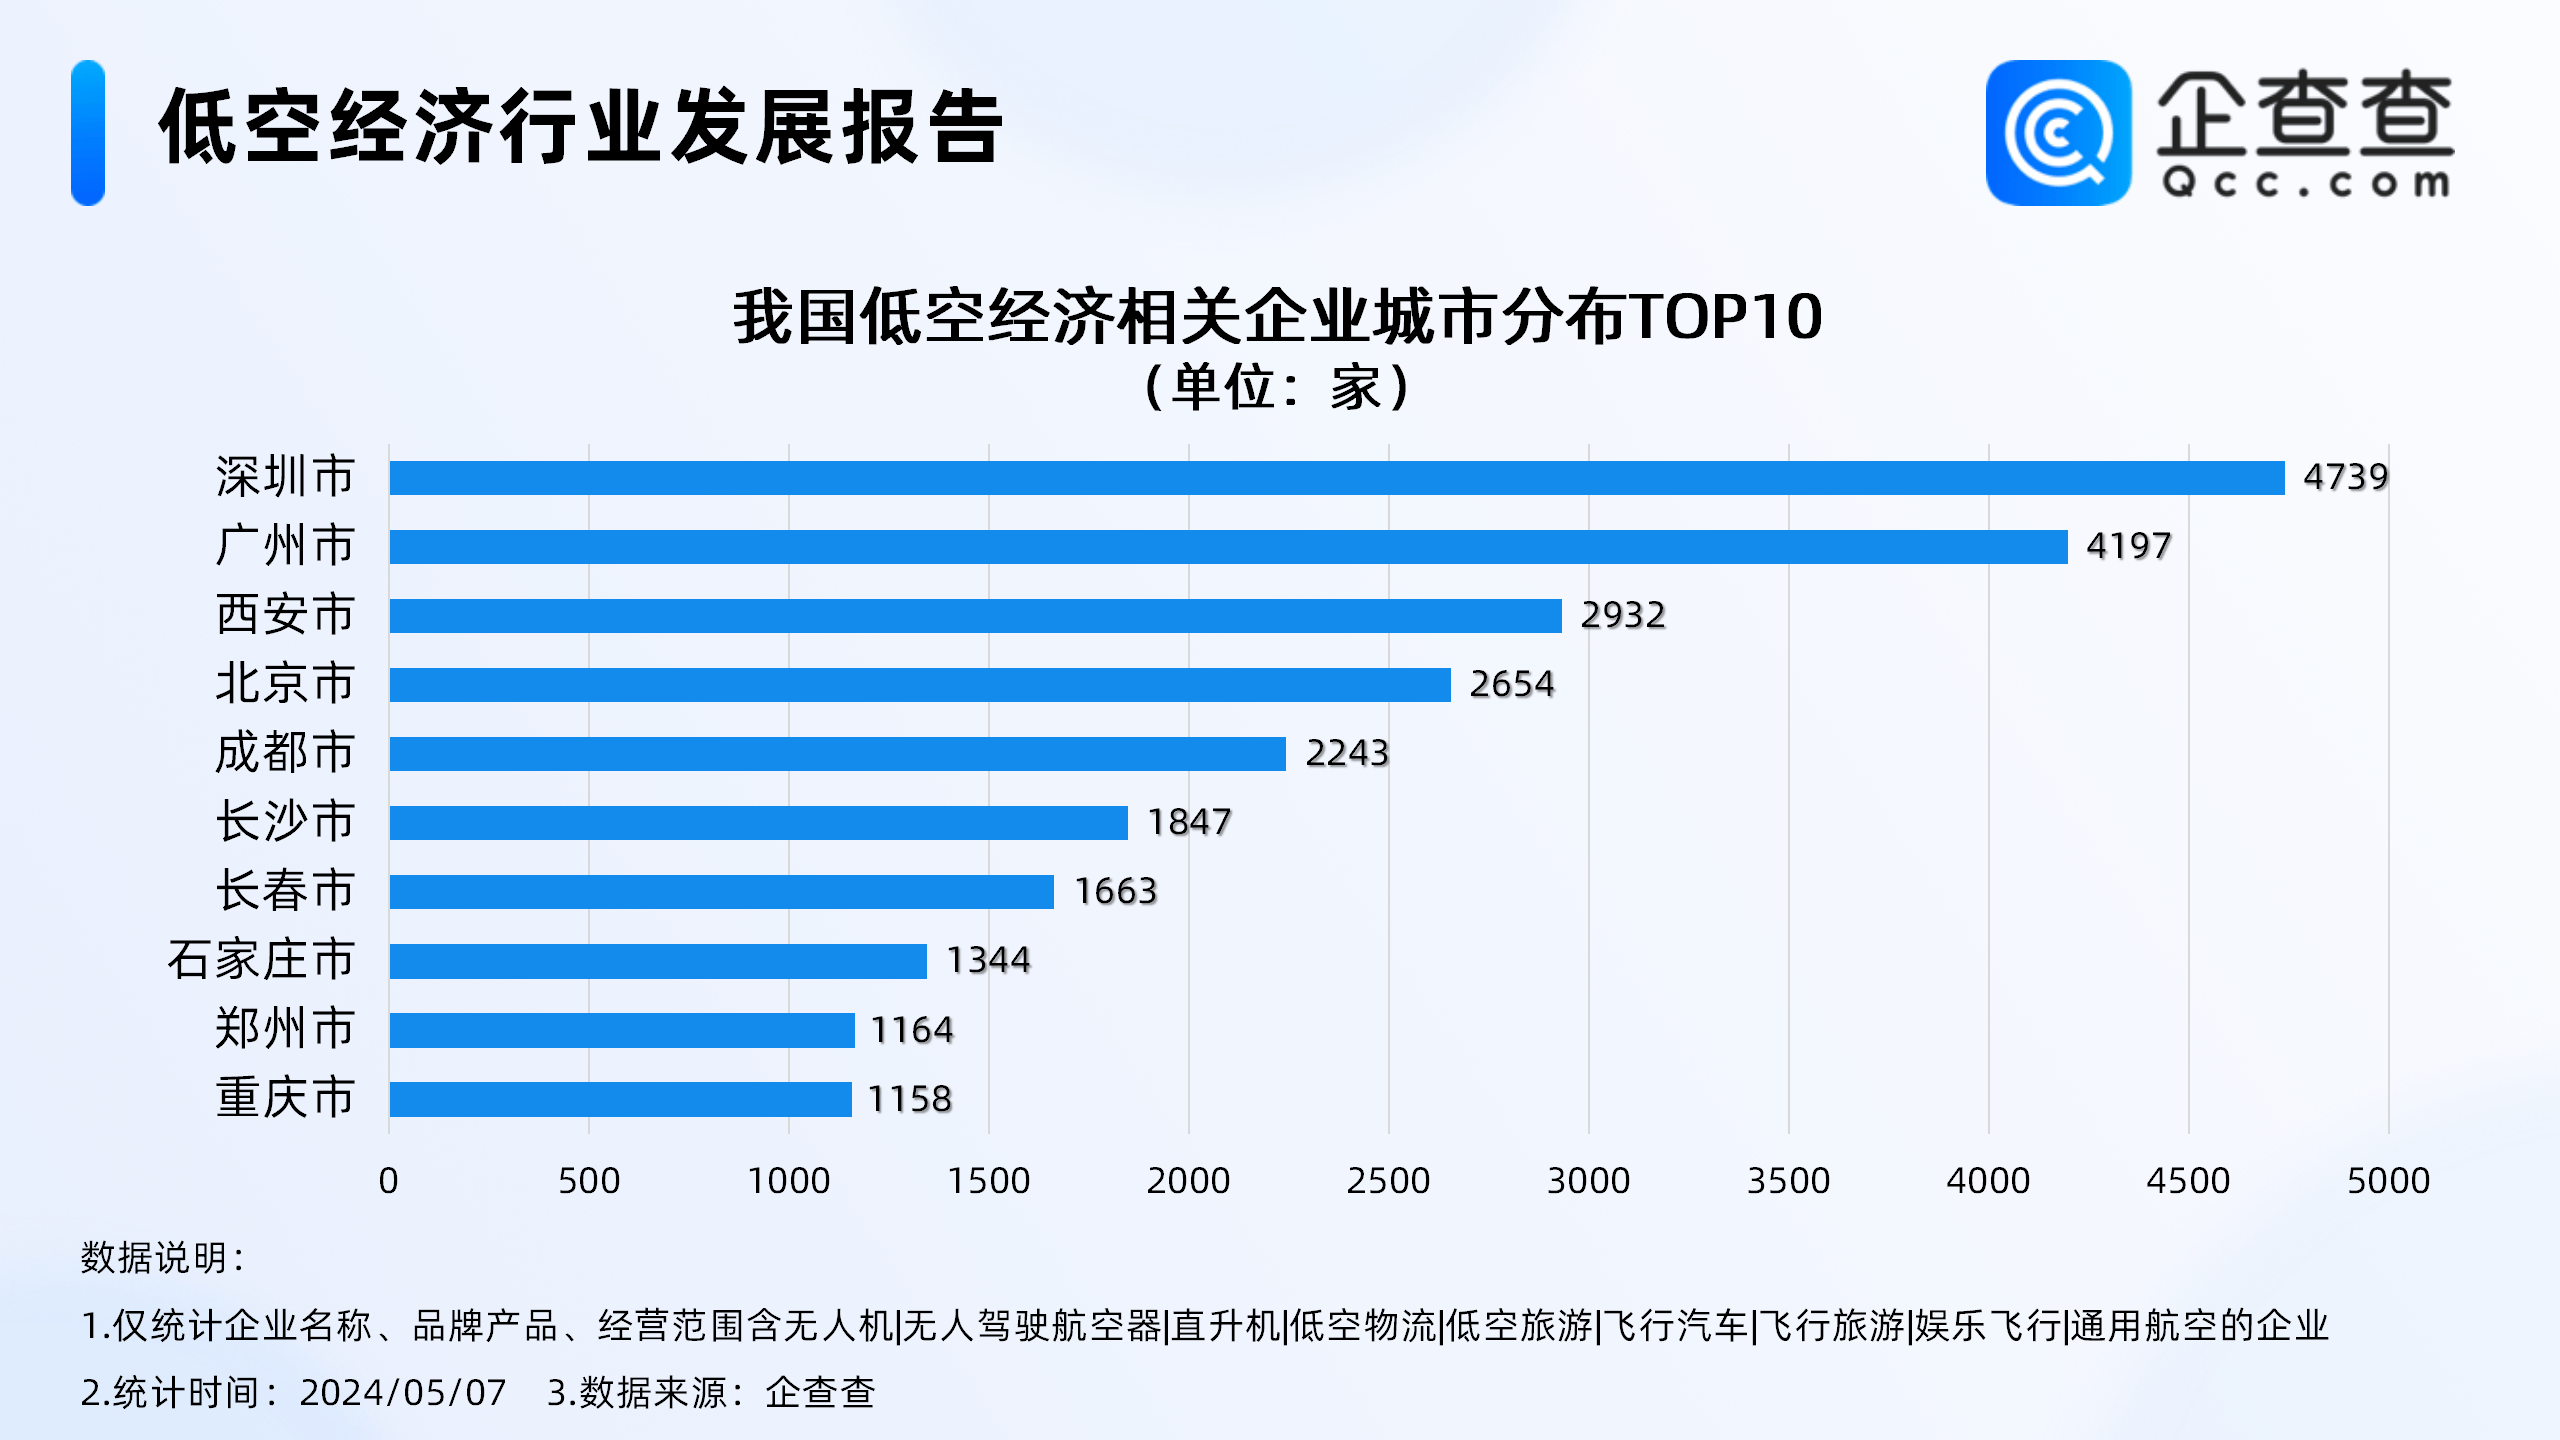 周鸿祎体验飞行汽车，国内低空经济相关企业超7万家，深圳第一